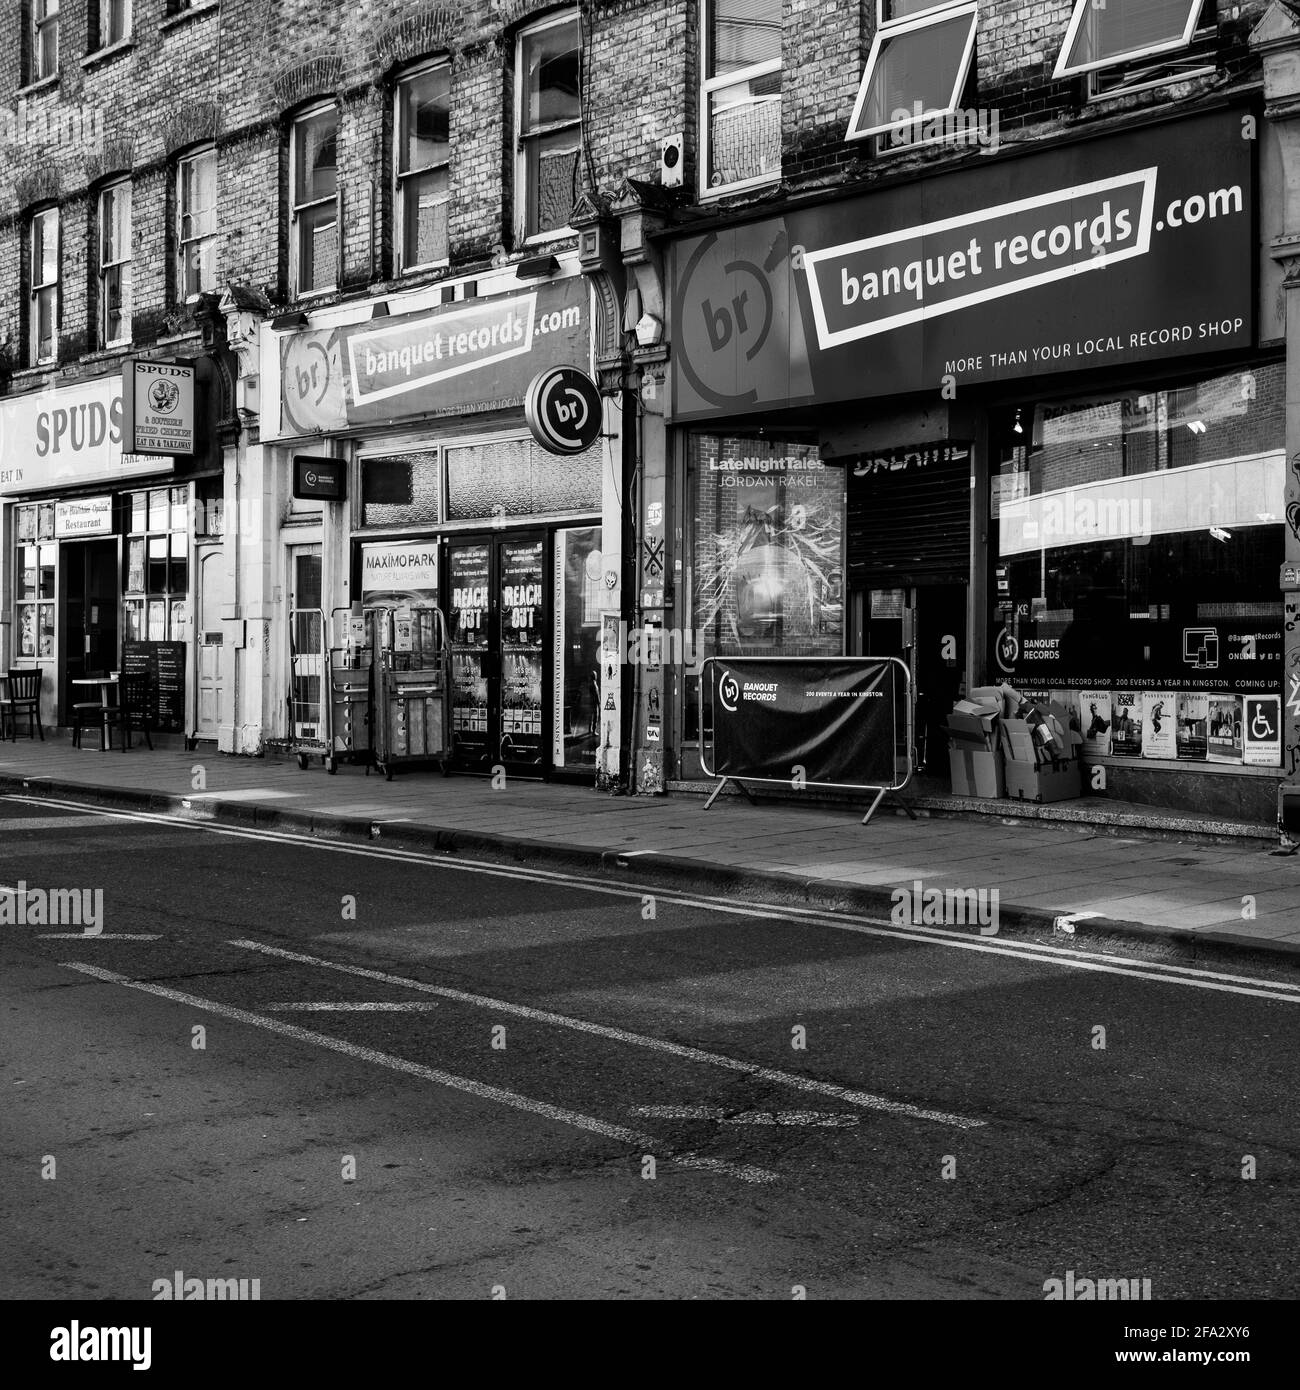 Kingston London UK, aprile 19 2021, immagine in bianco e nero di una fila di negozi tradizionali di High Street senza persone Foto Stock